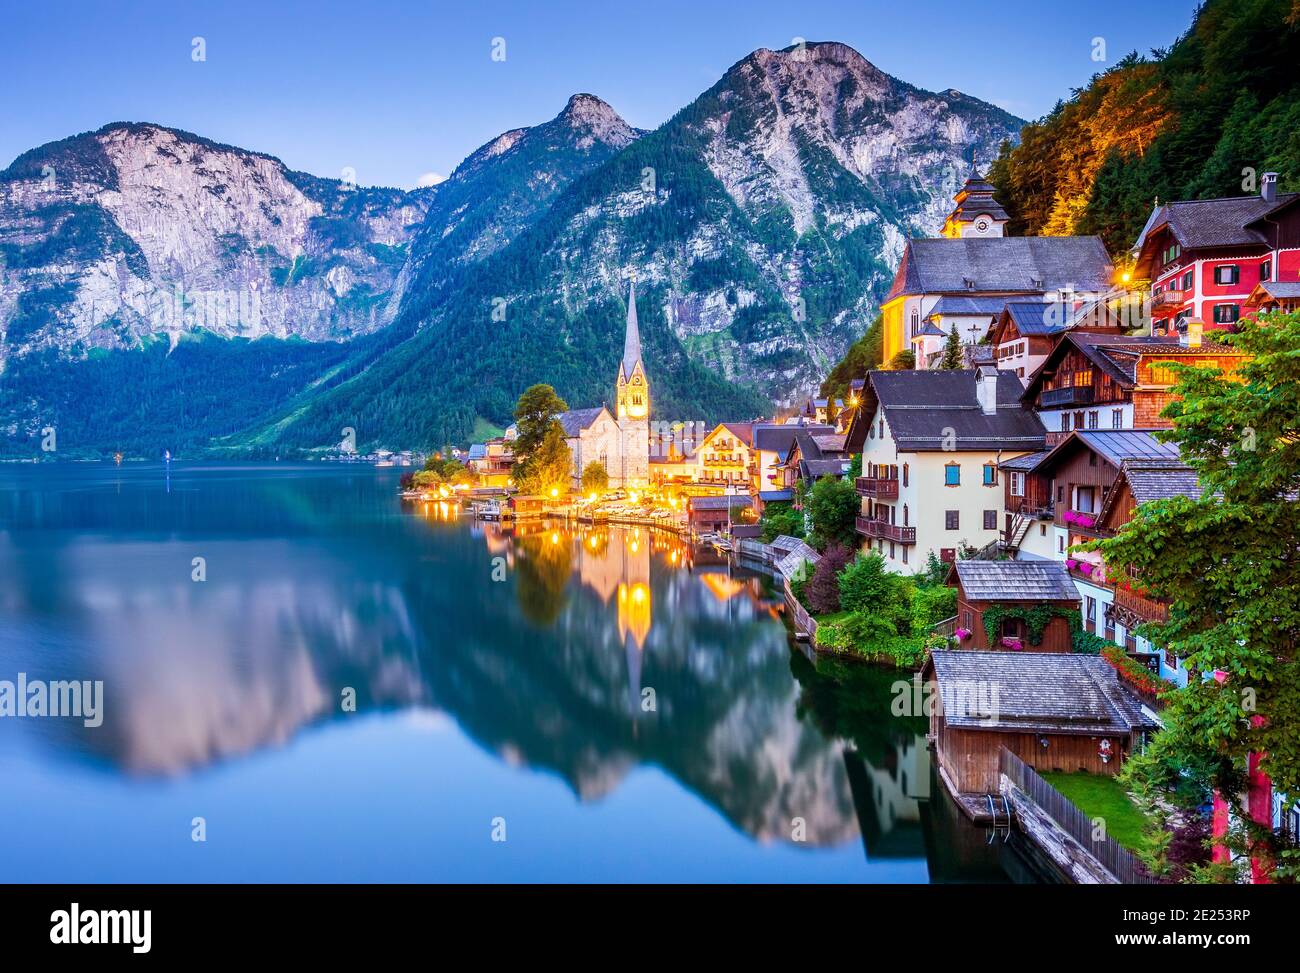 Hallstatt, Austria. Villaggio di montagna nelle Alpi austriache. Foto Stock